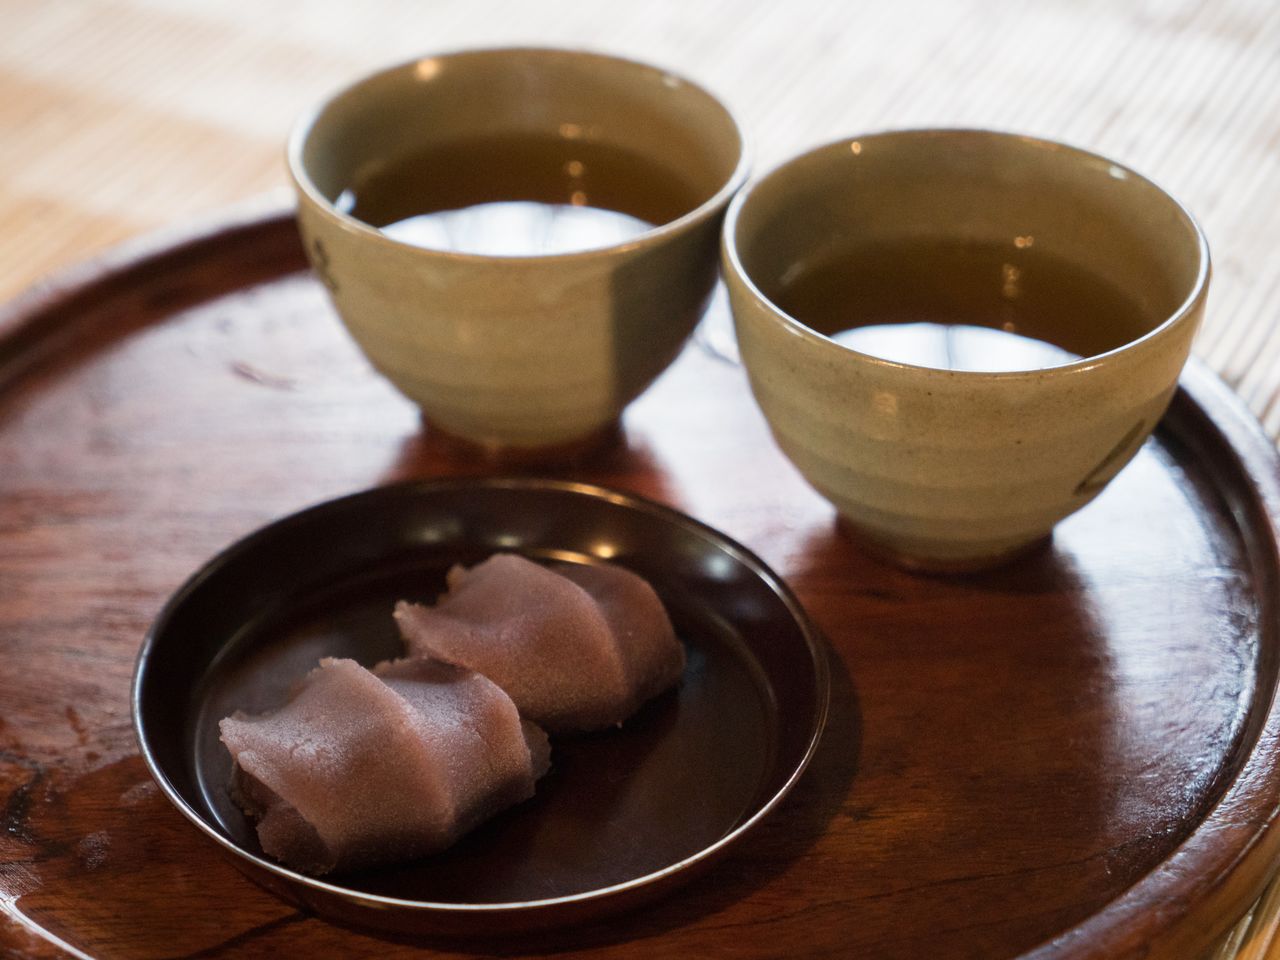 Акафуку-моти – рисовые лепешки, завернутые в сладкую бобовую пасту коси-ан. Моти, которые подают здесь с чашечкой бантя (крупнолистового японского чая), можно попробовать в магазине